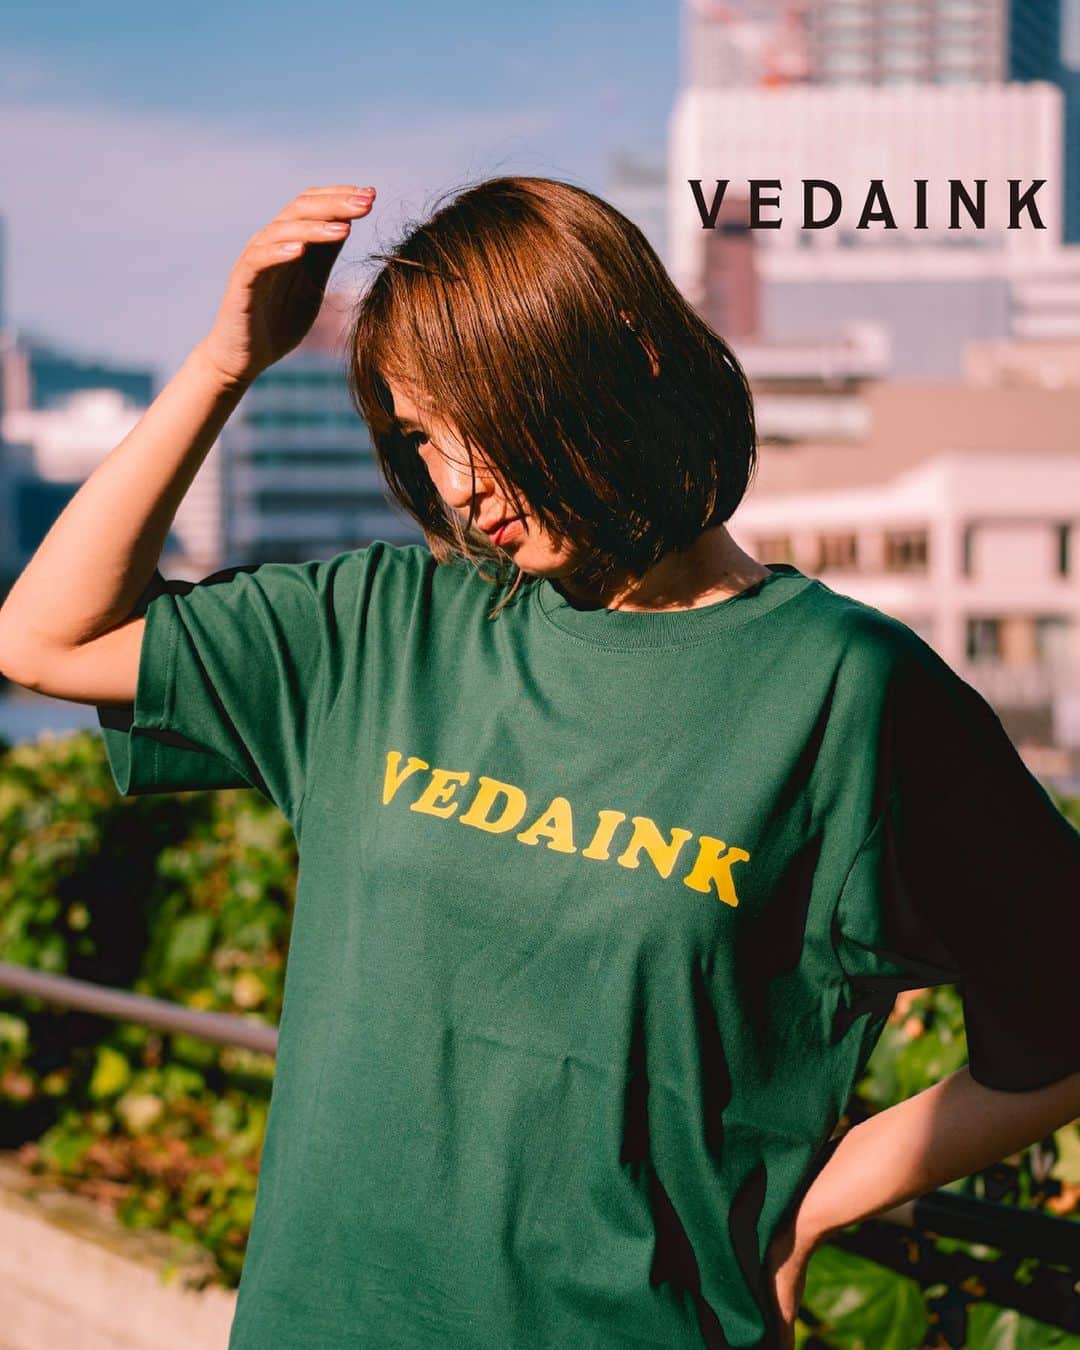 VEDAINK （ヴェーダインク）のインスタグラム